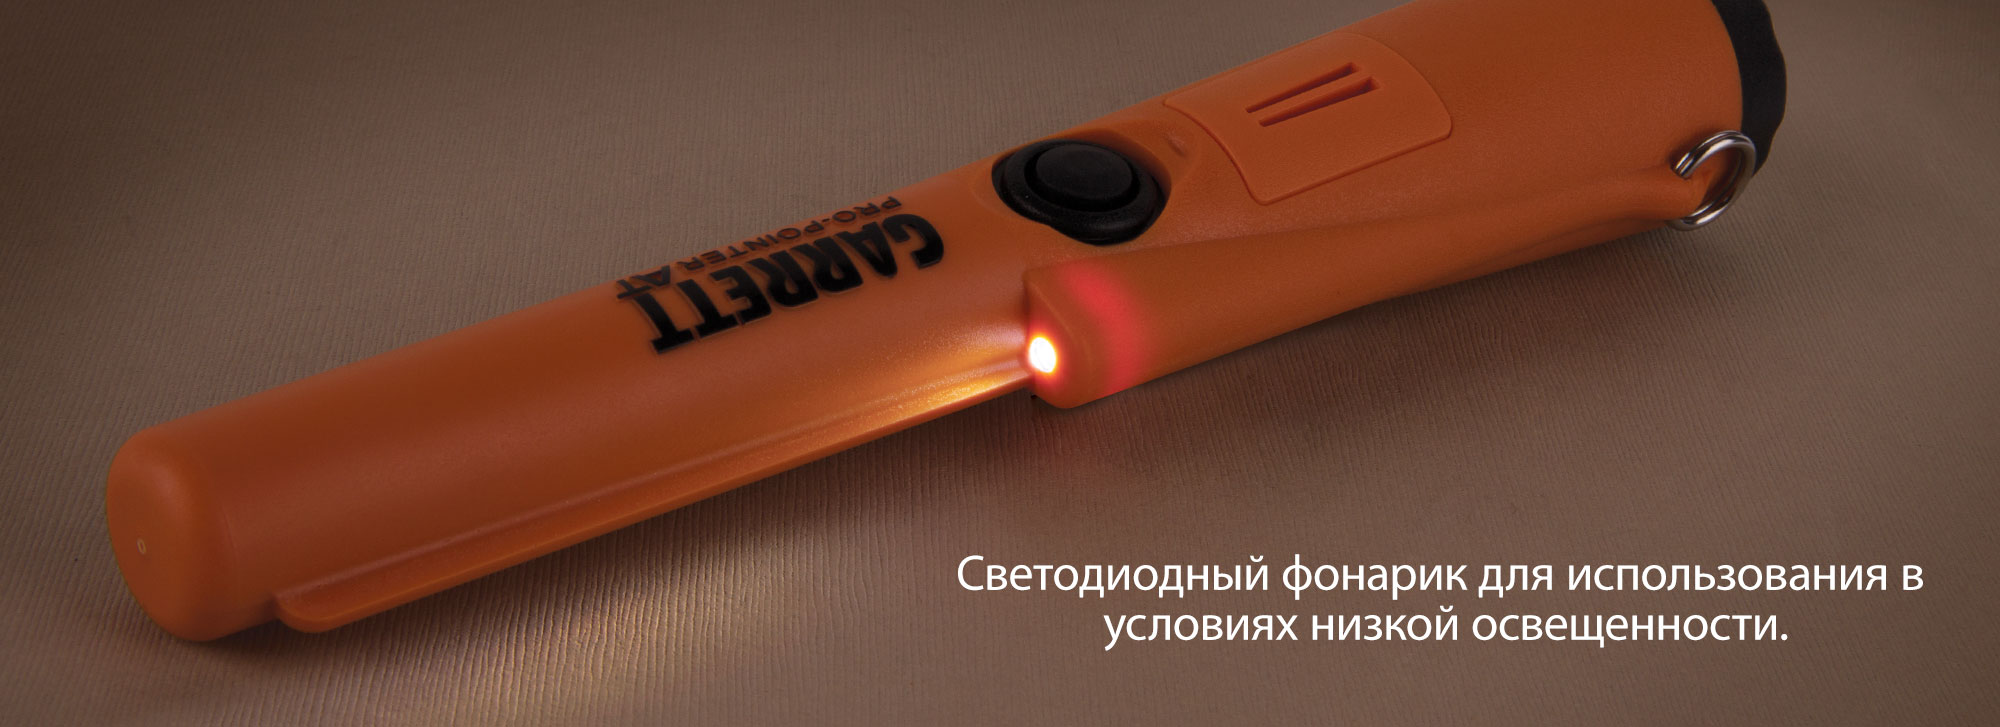 Светодиодный фонарик для использования в условиях низкой освещенности.